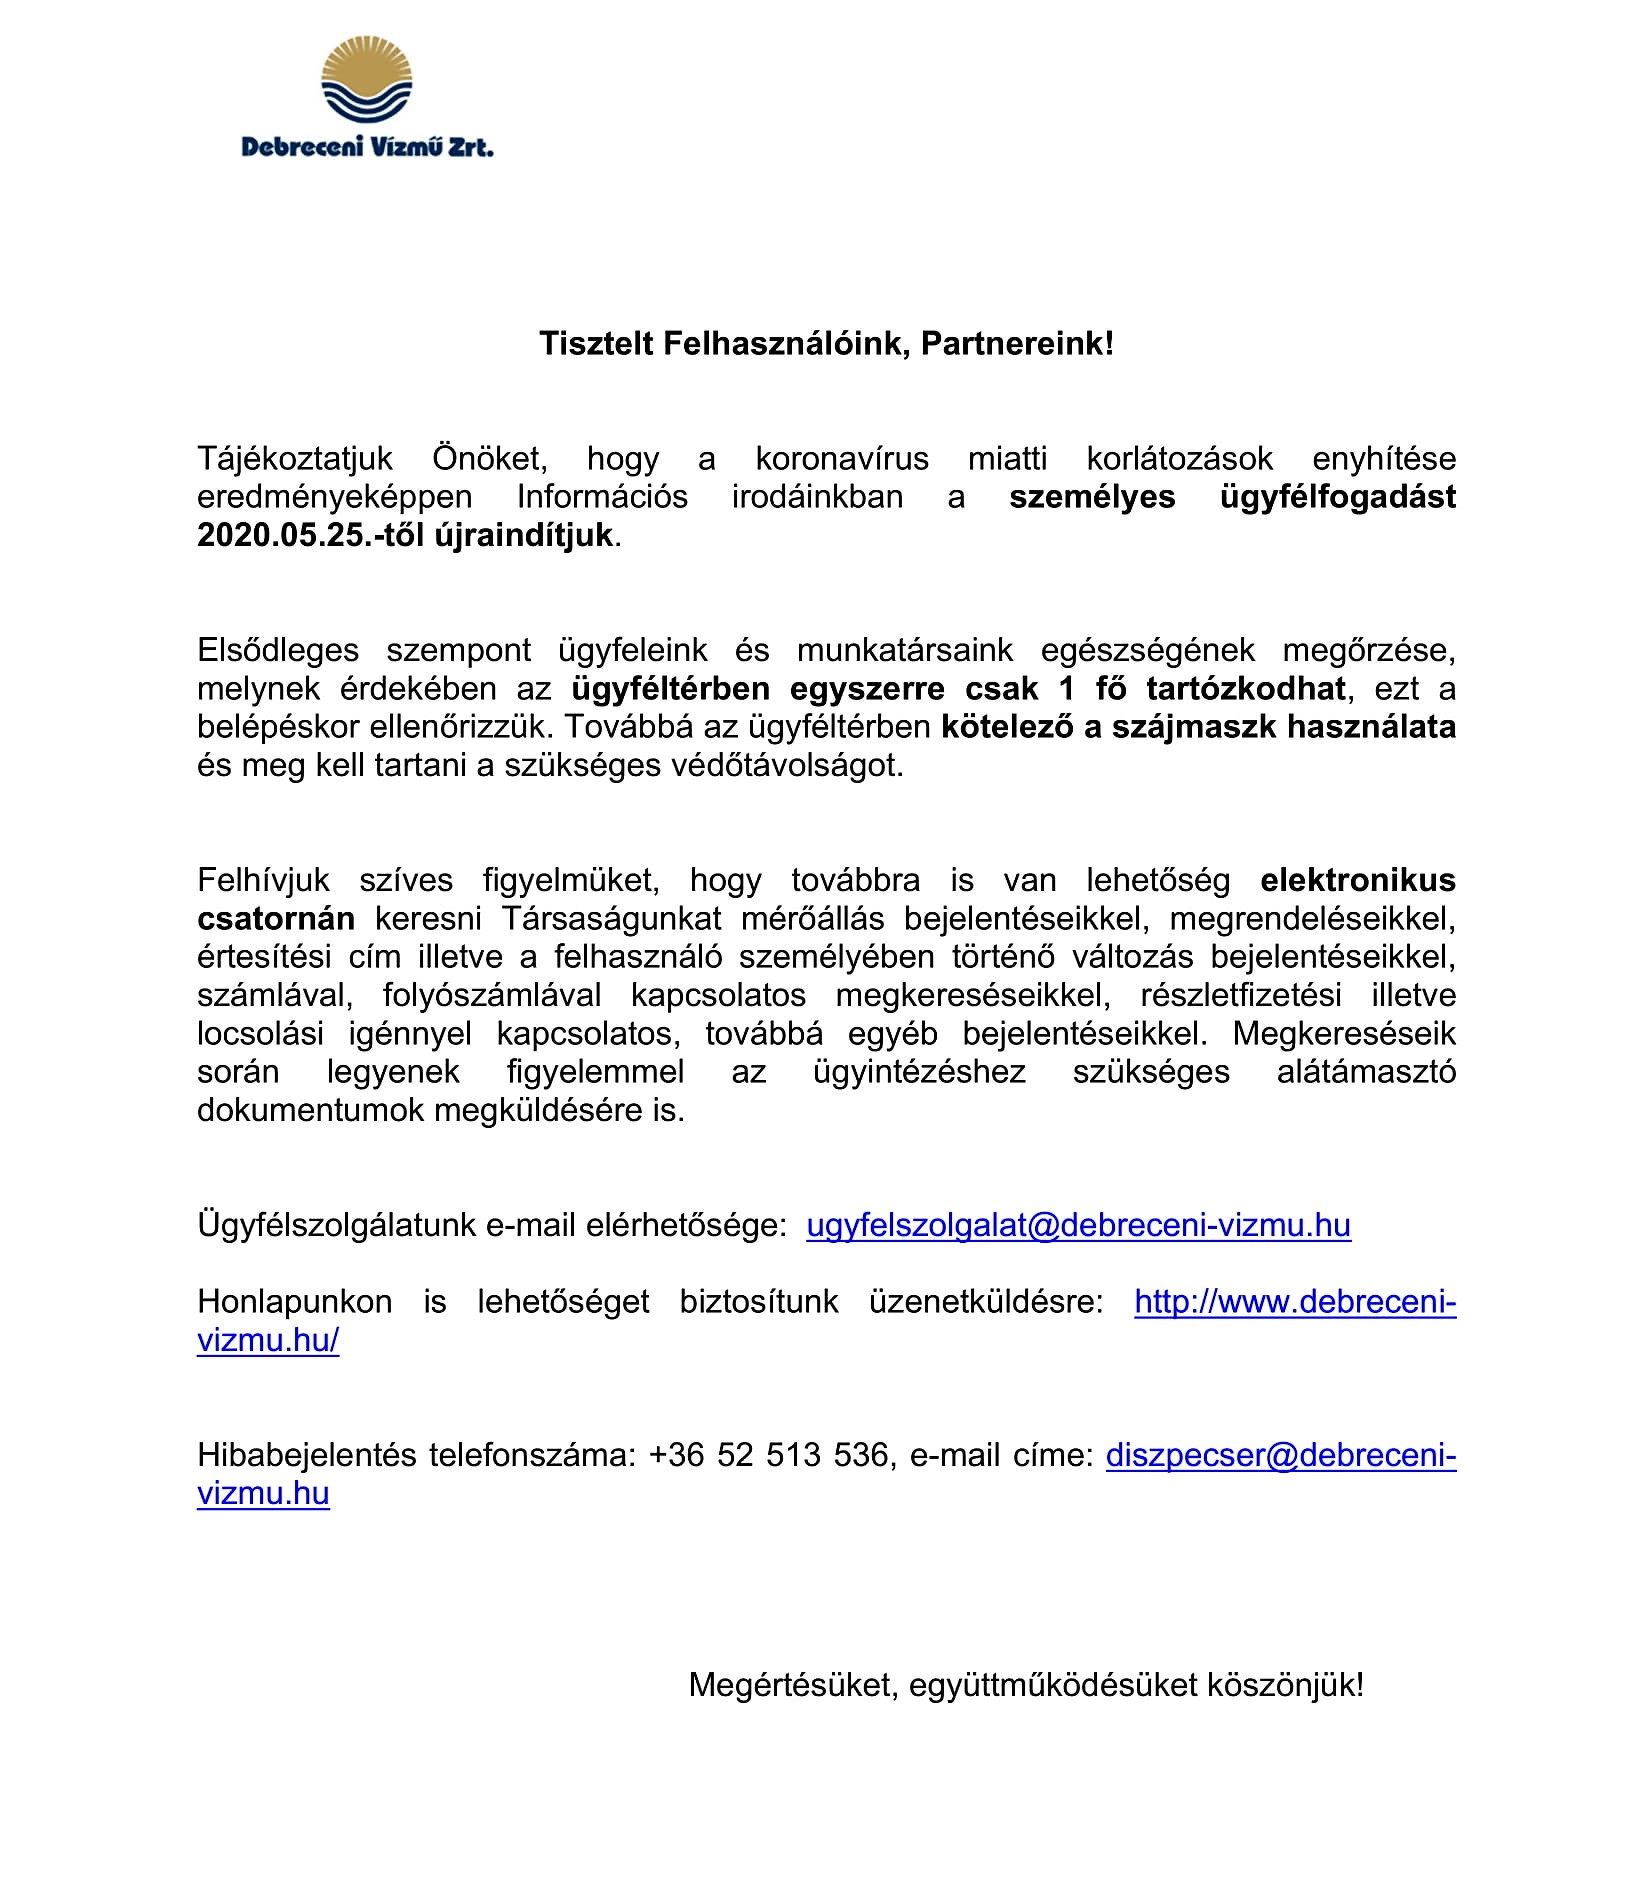 Debreceni Vízmű Zrt. tájékoztatója a személyes ügyfélfogadásuk újraindításáról